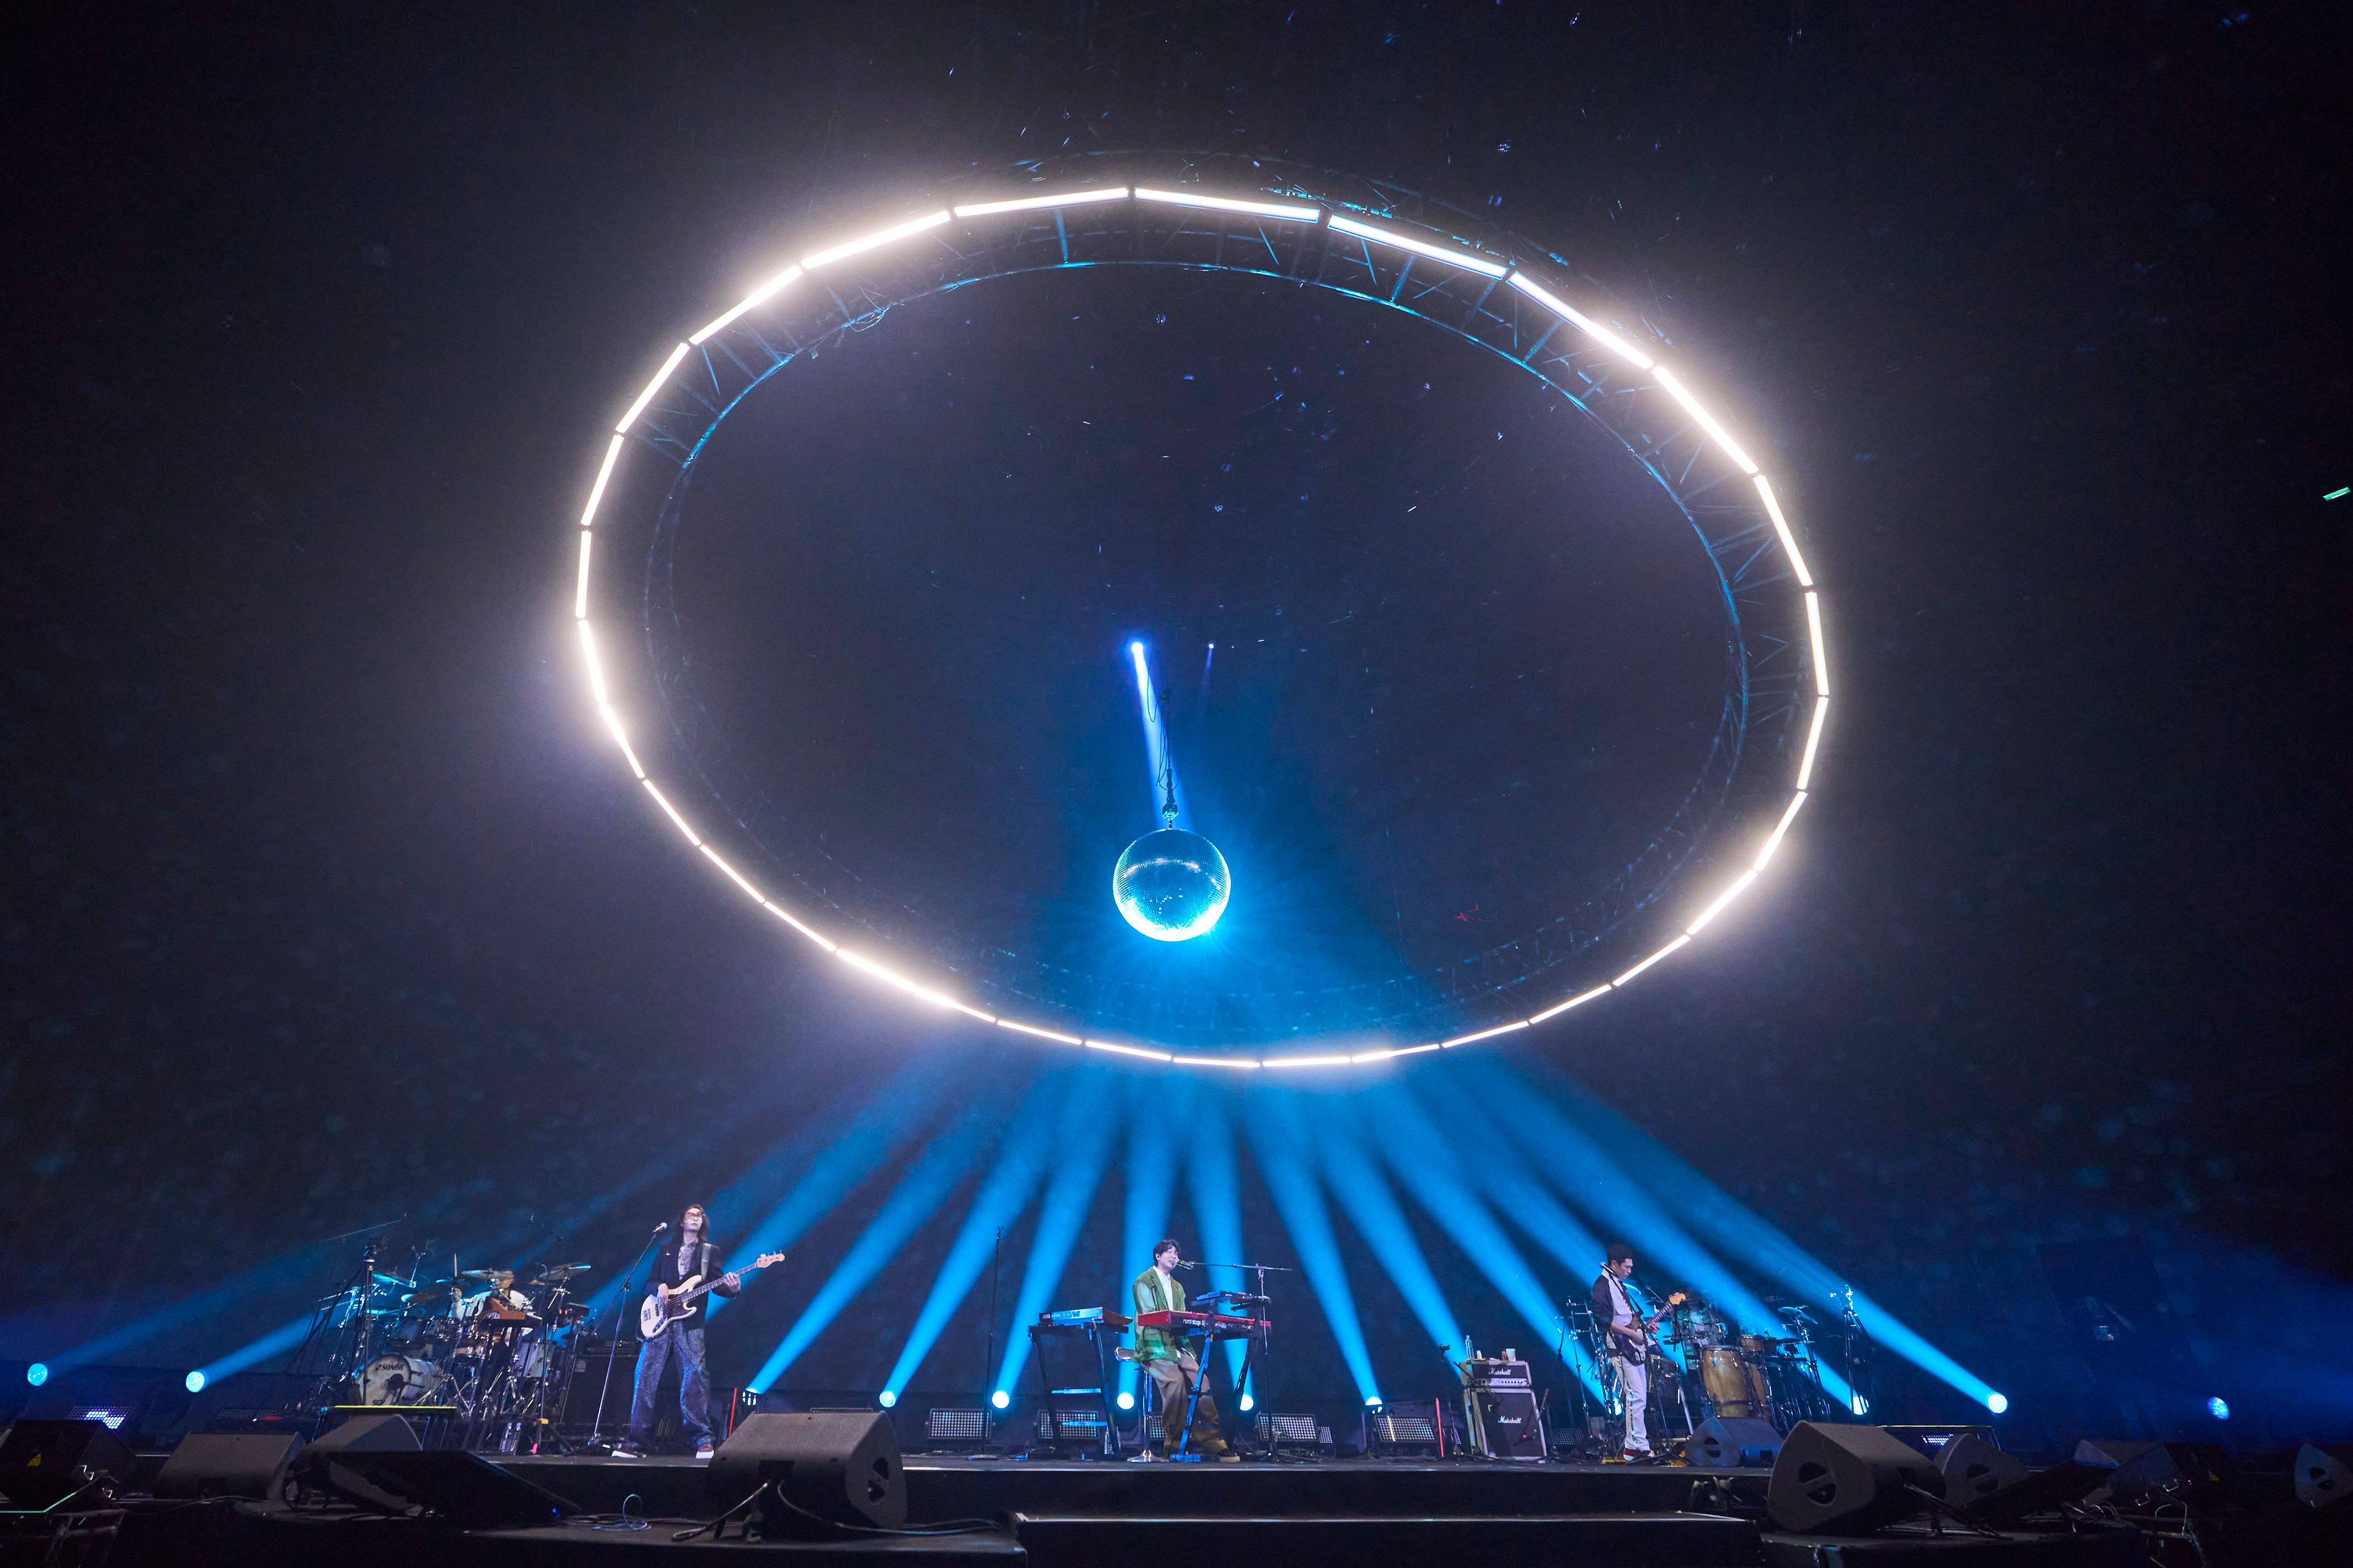 宇宙人舞台打造宇宙飛碟的未來感  相信音樂提供